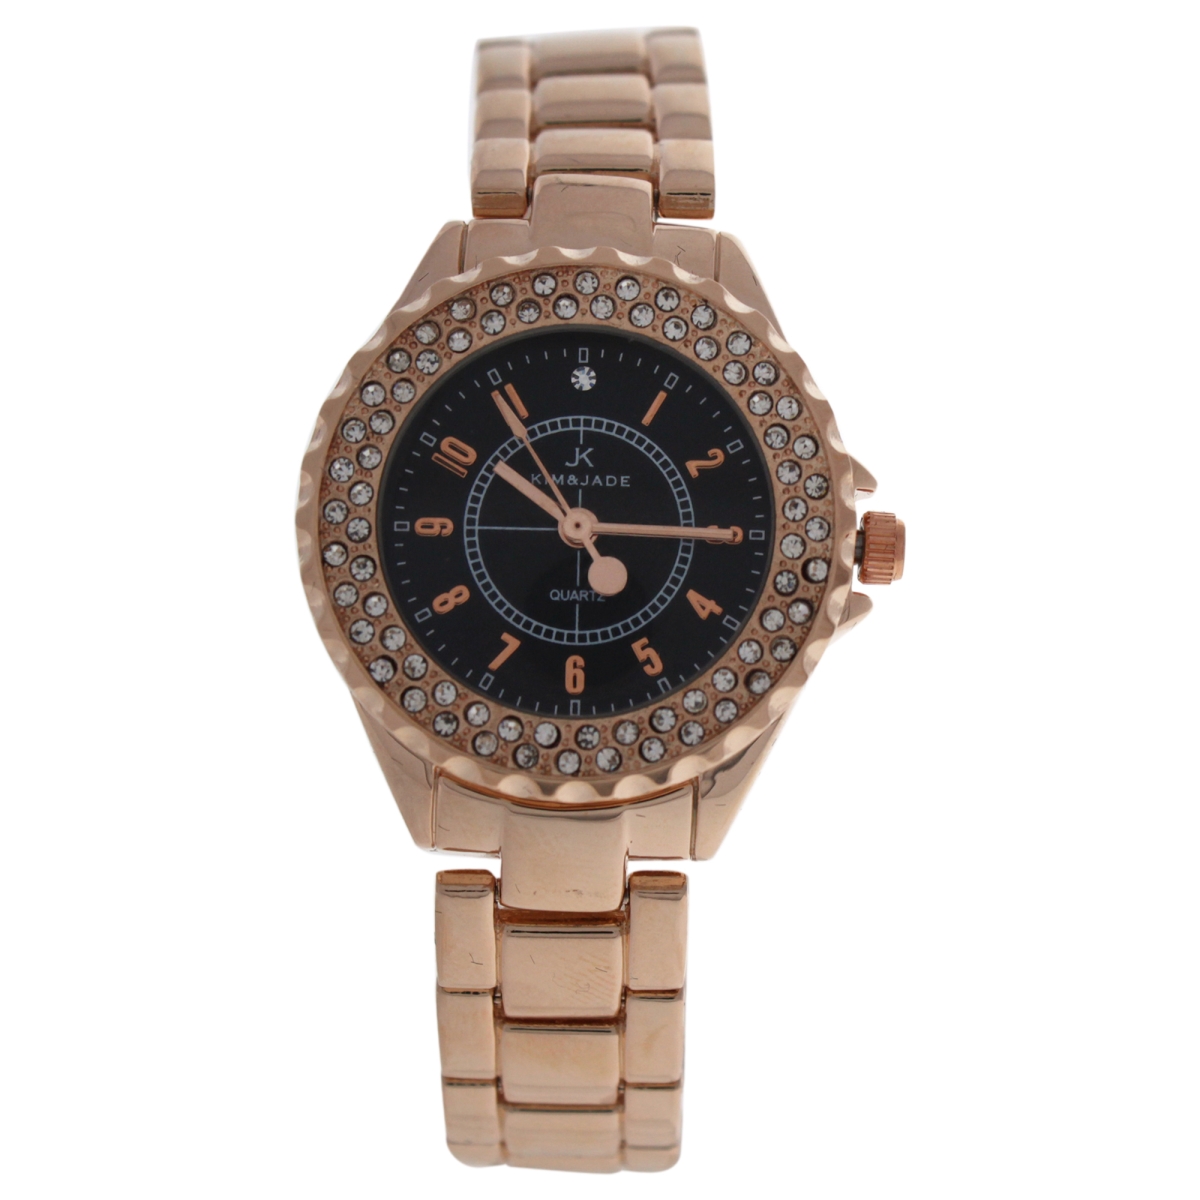 W-wat-1528 Rose Gold Stainless Steel Bracelet Watch For Women - 2033l-gpb